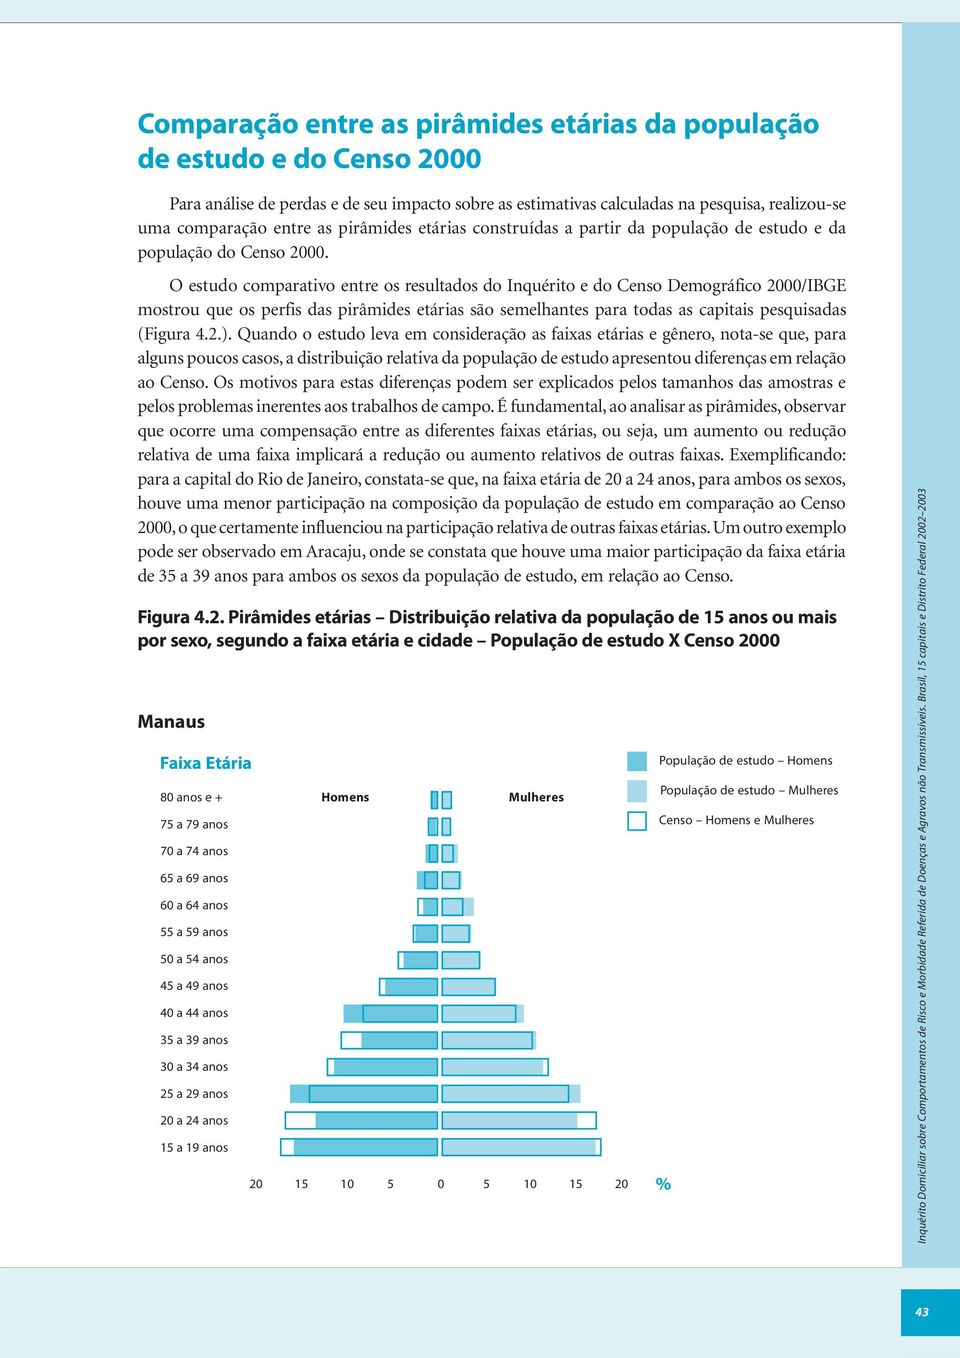 O estudo comparativo entre os resultados do Inquérito e do Censo Demográfico 2000/IBGE mostrou que os perfis das pirâmides etárias são semelhantes para todas as capitais pesquisadas (Figura 4.2.).